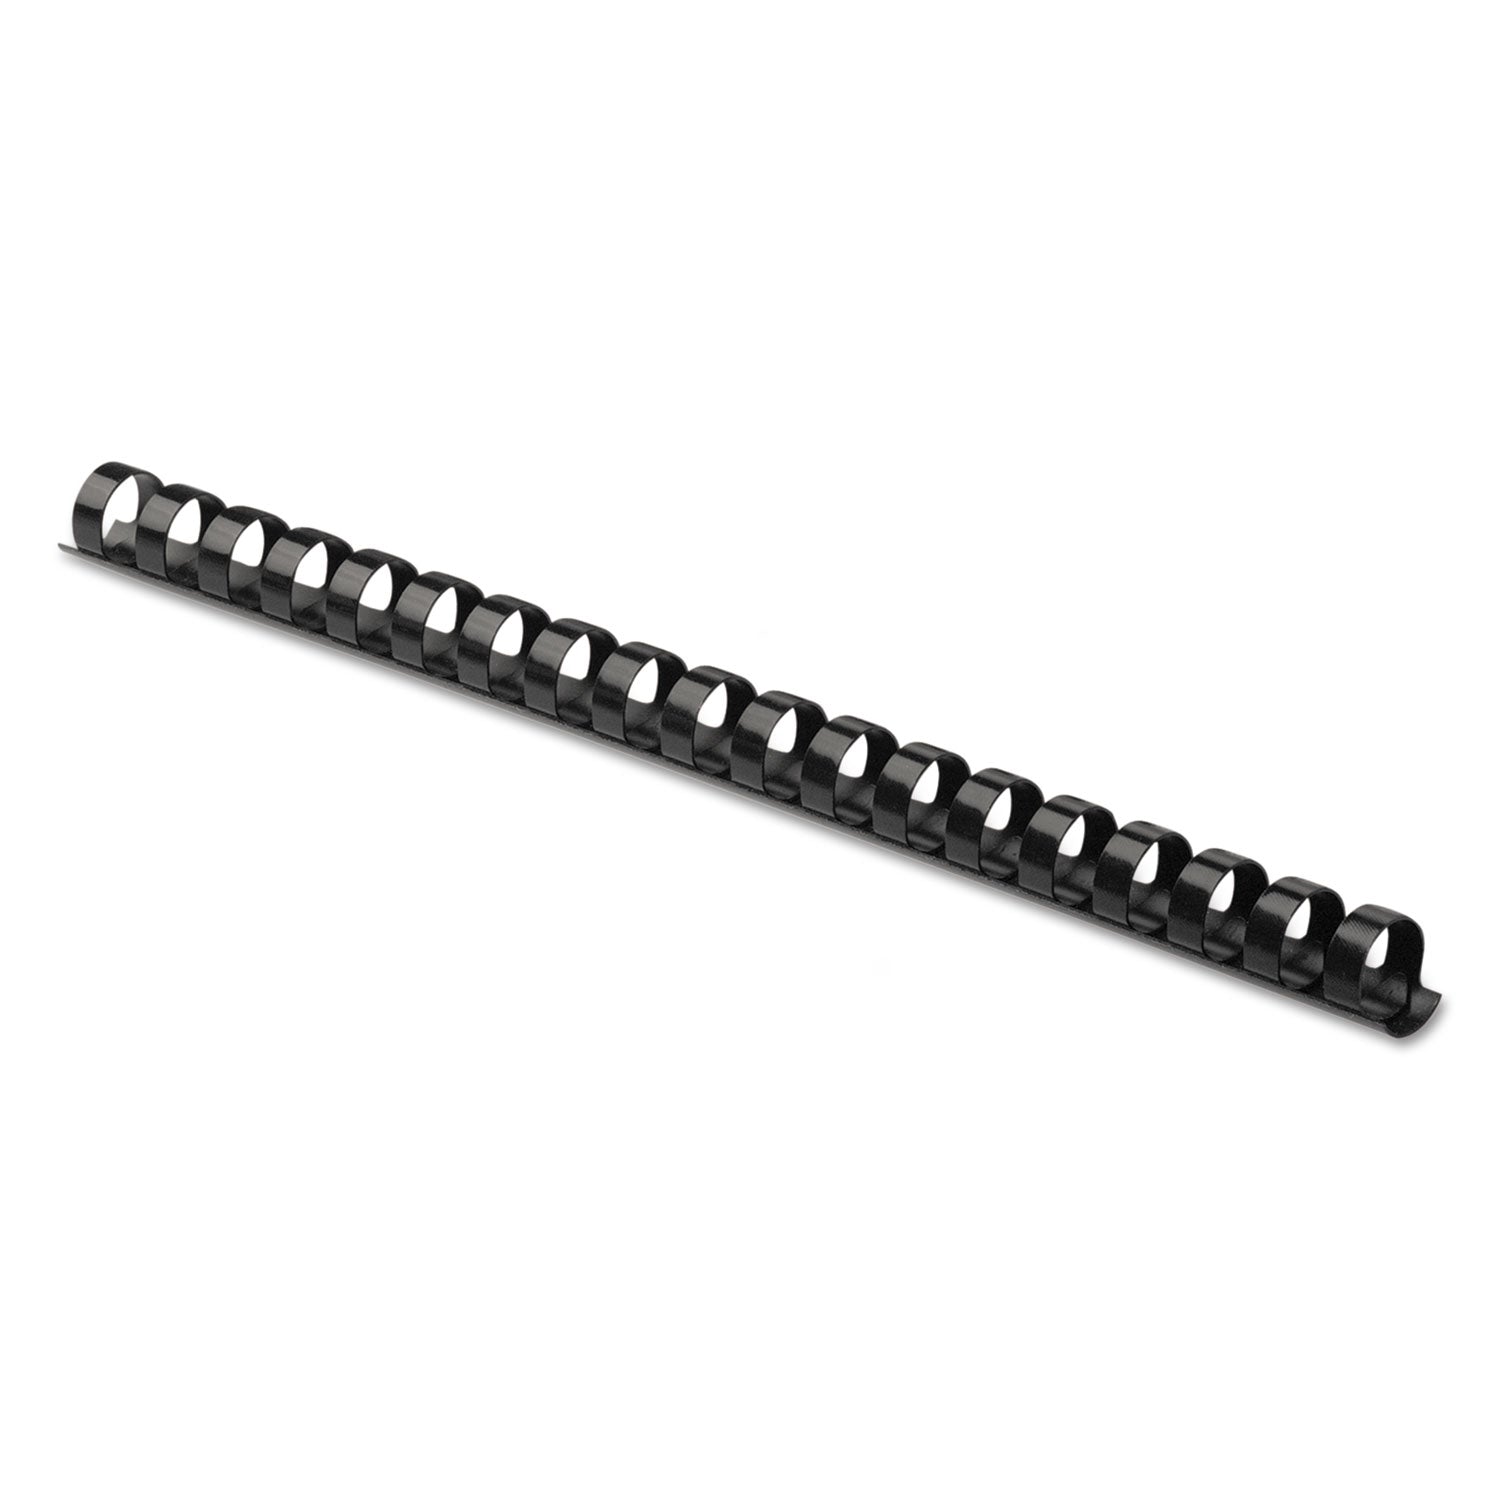 Plastic Comb Bindings, 3/8" Diameter, 55 Sheet Capacity, Black, 100/Pack - 